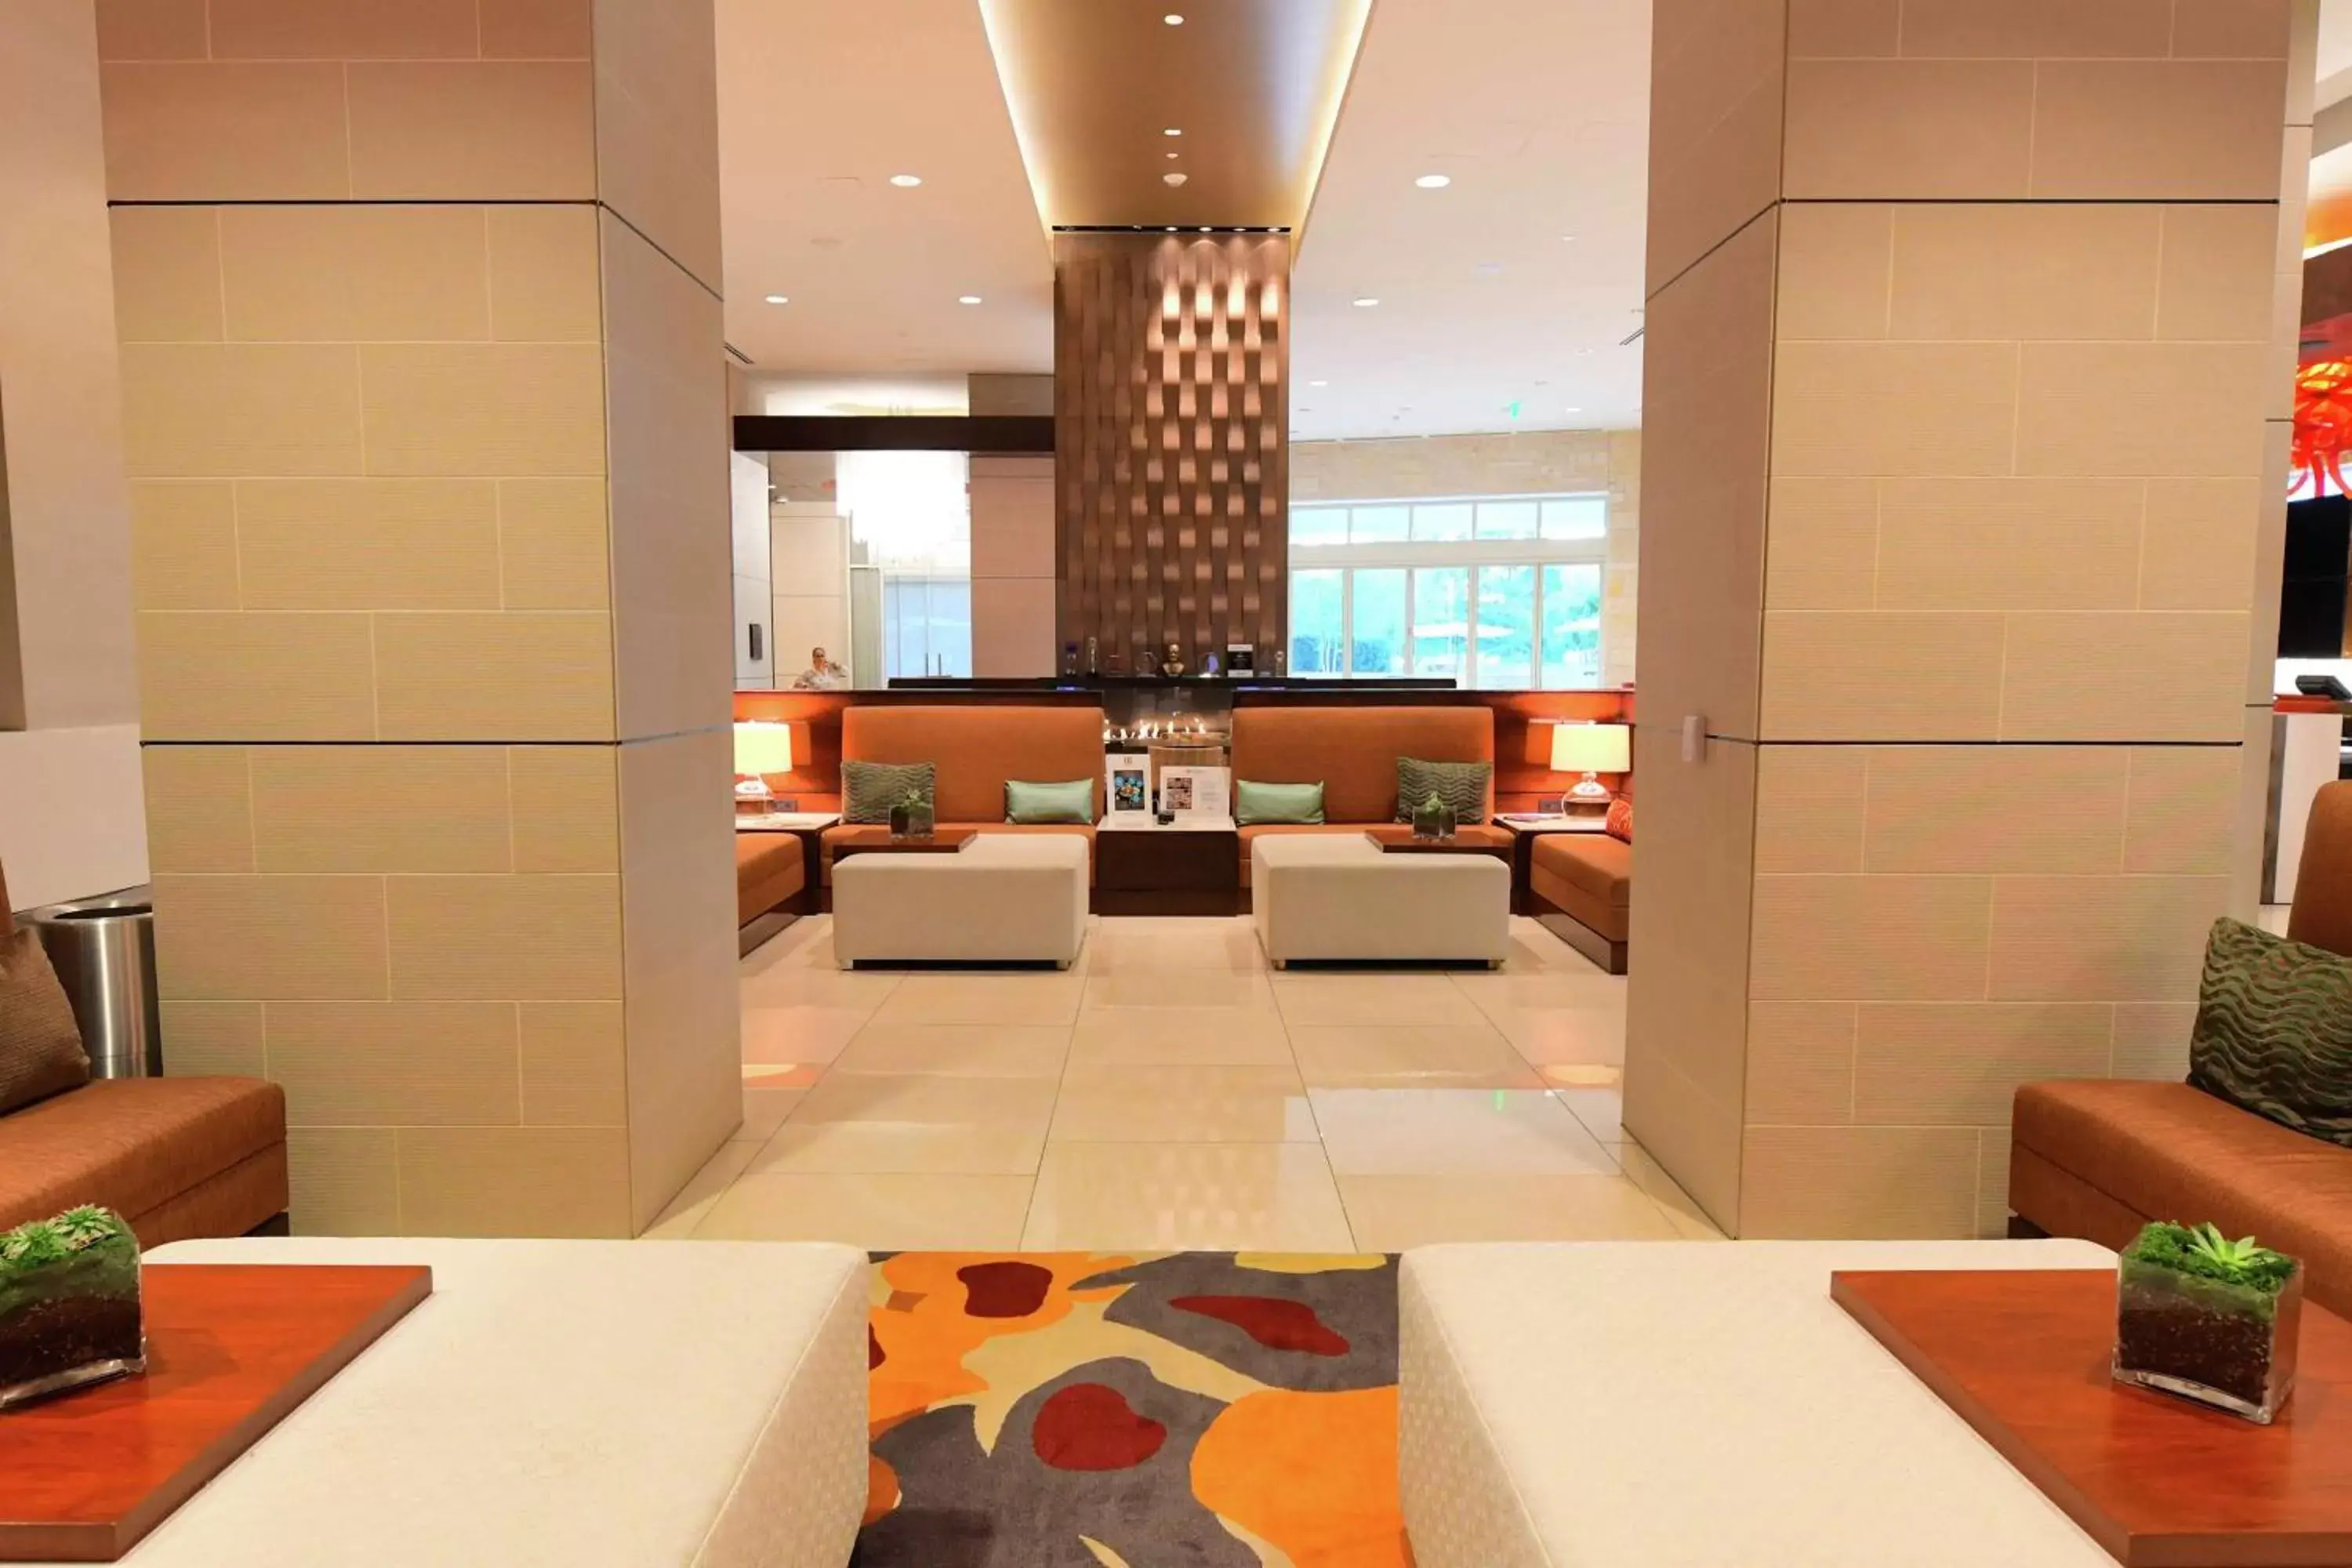 Lobby or reception in Hilton Dallas/Plano Granite Park